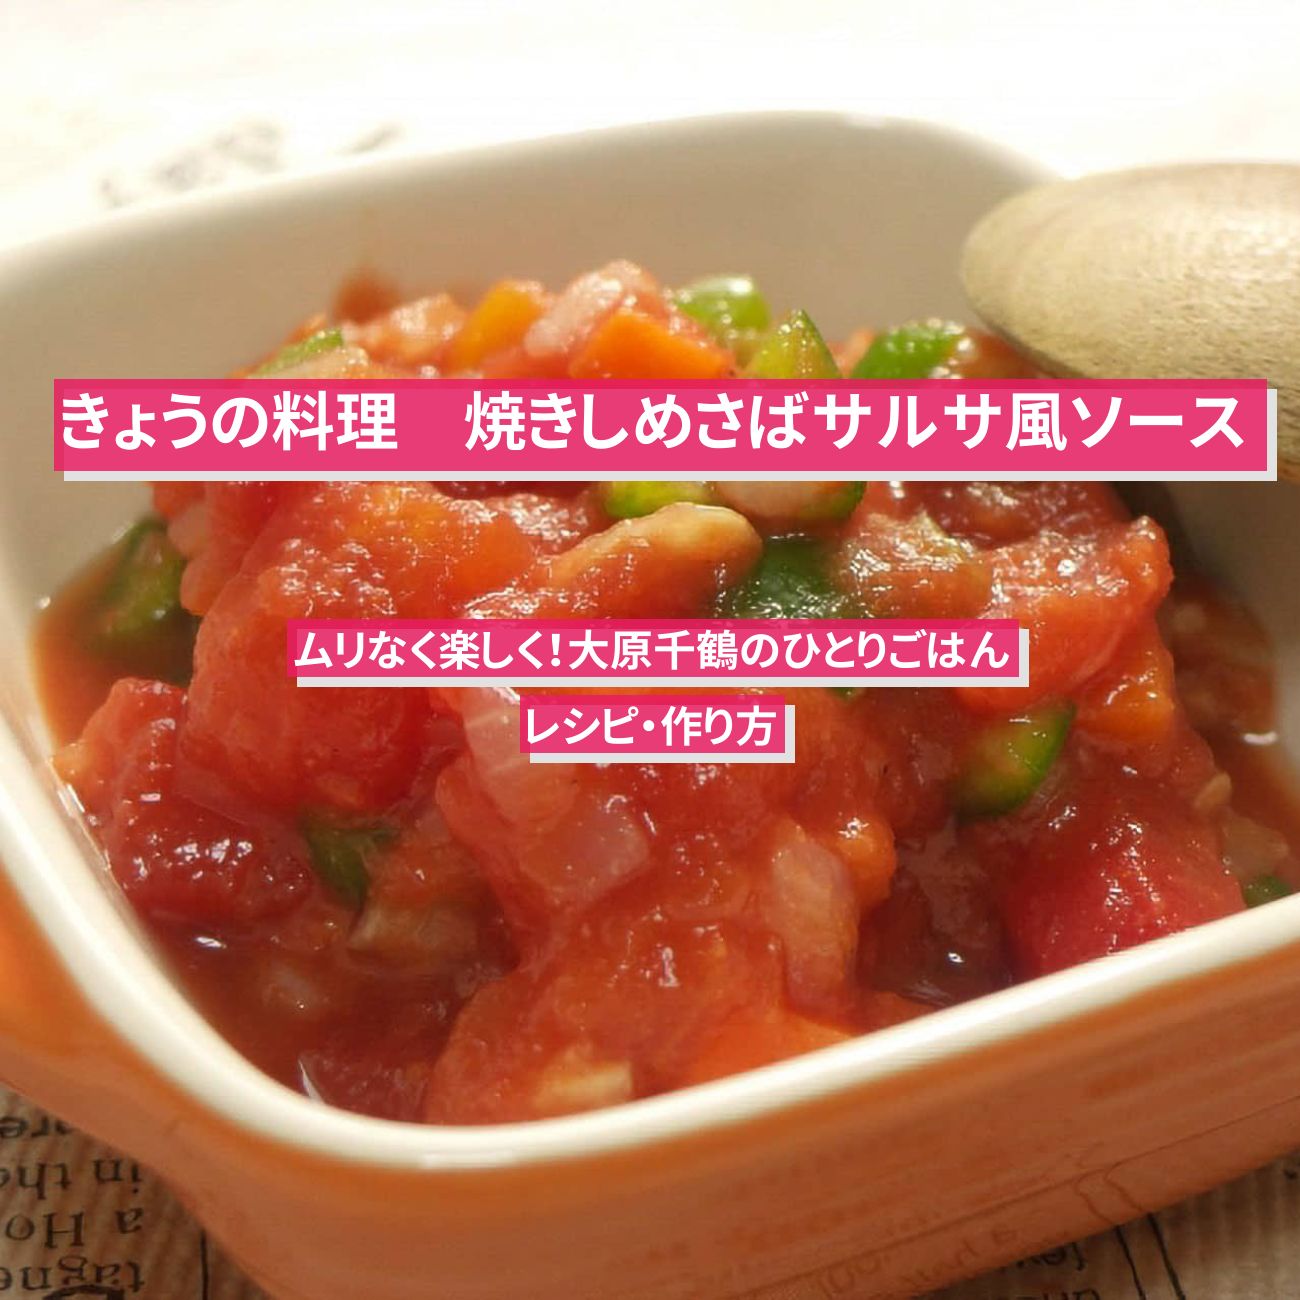 【きょうの料理】『焼きしめさばサルサ風ソース』大原千鶴さんのレシピ・作り方